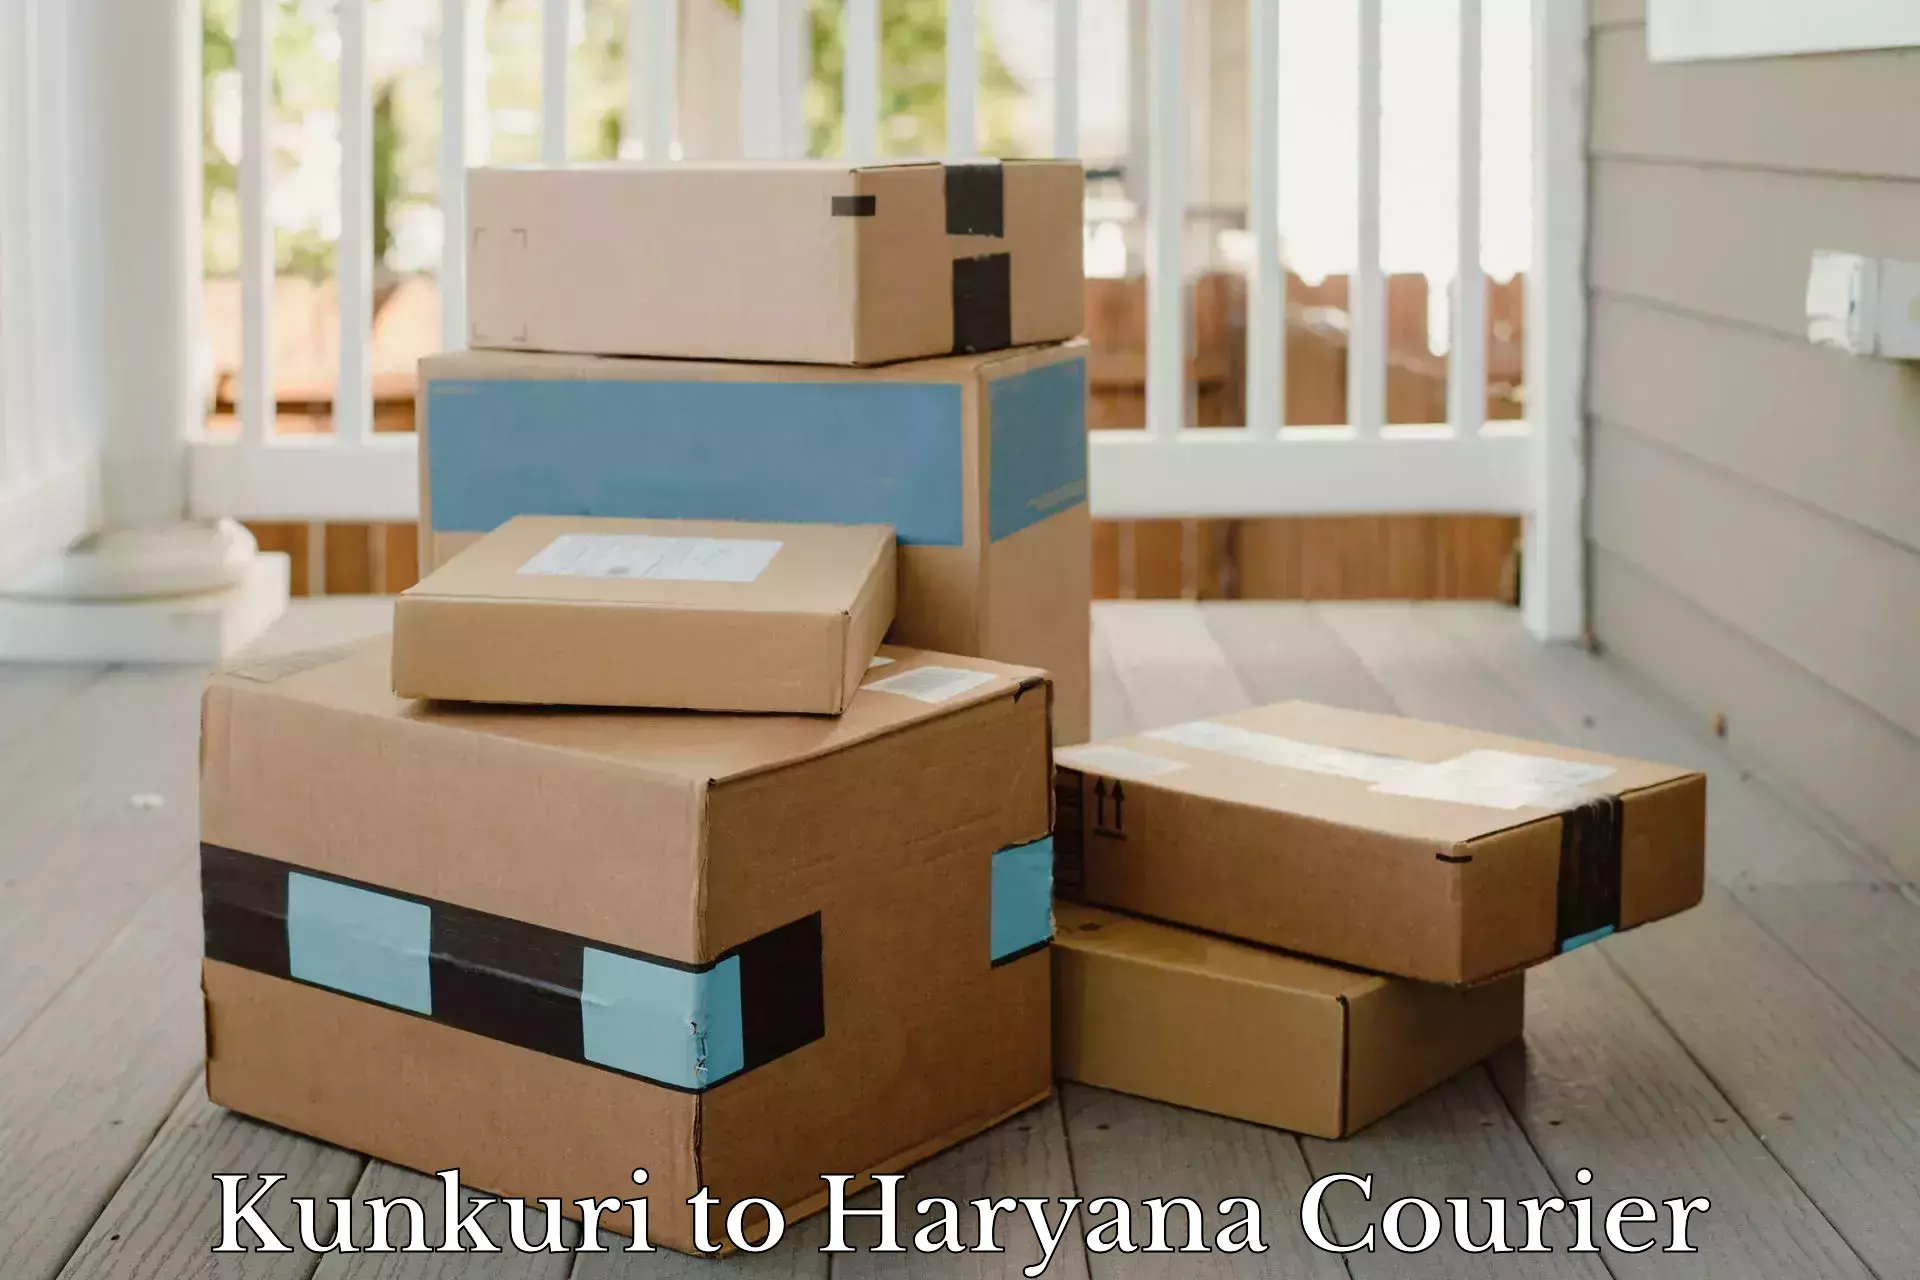 Multi-service courier options Kunkuri to Haryana